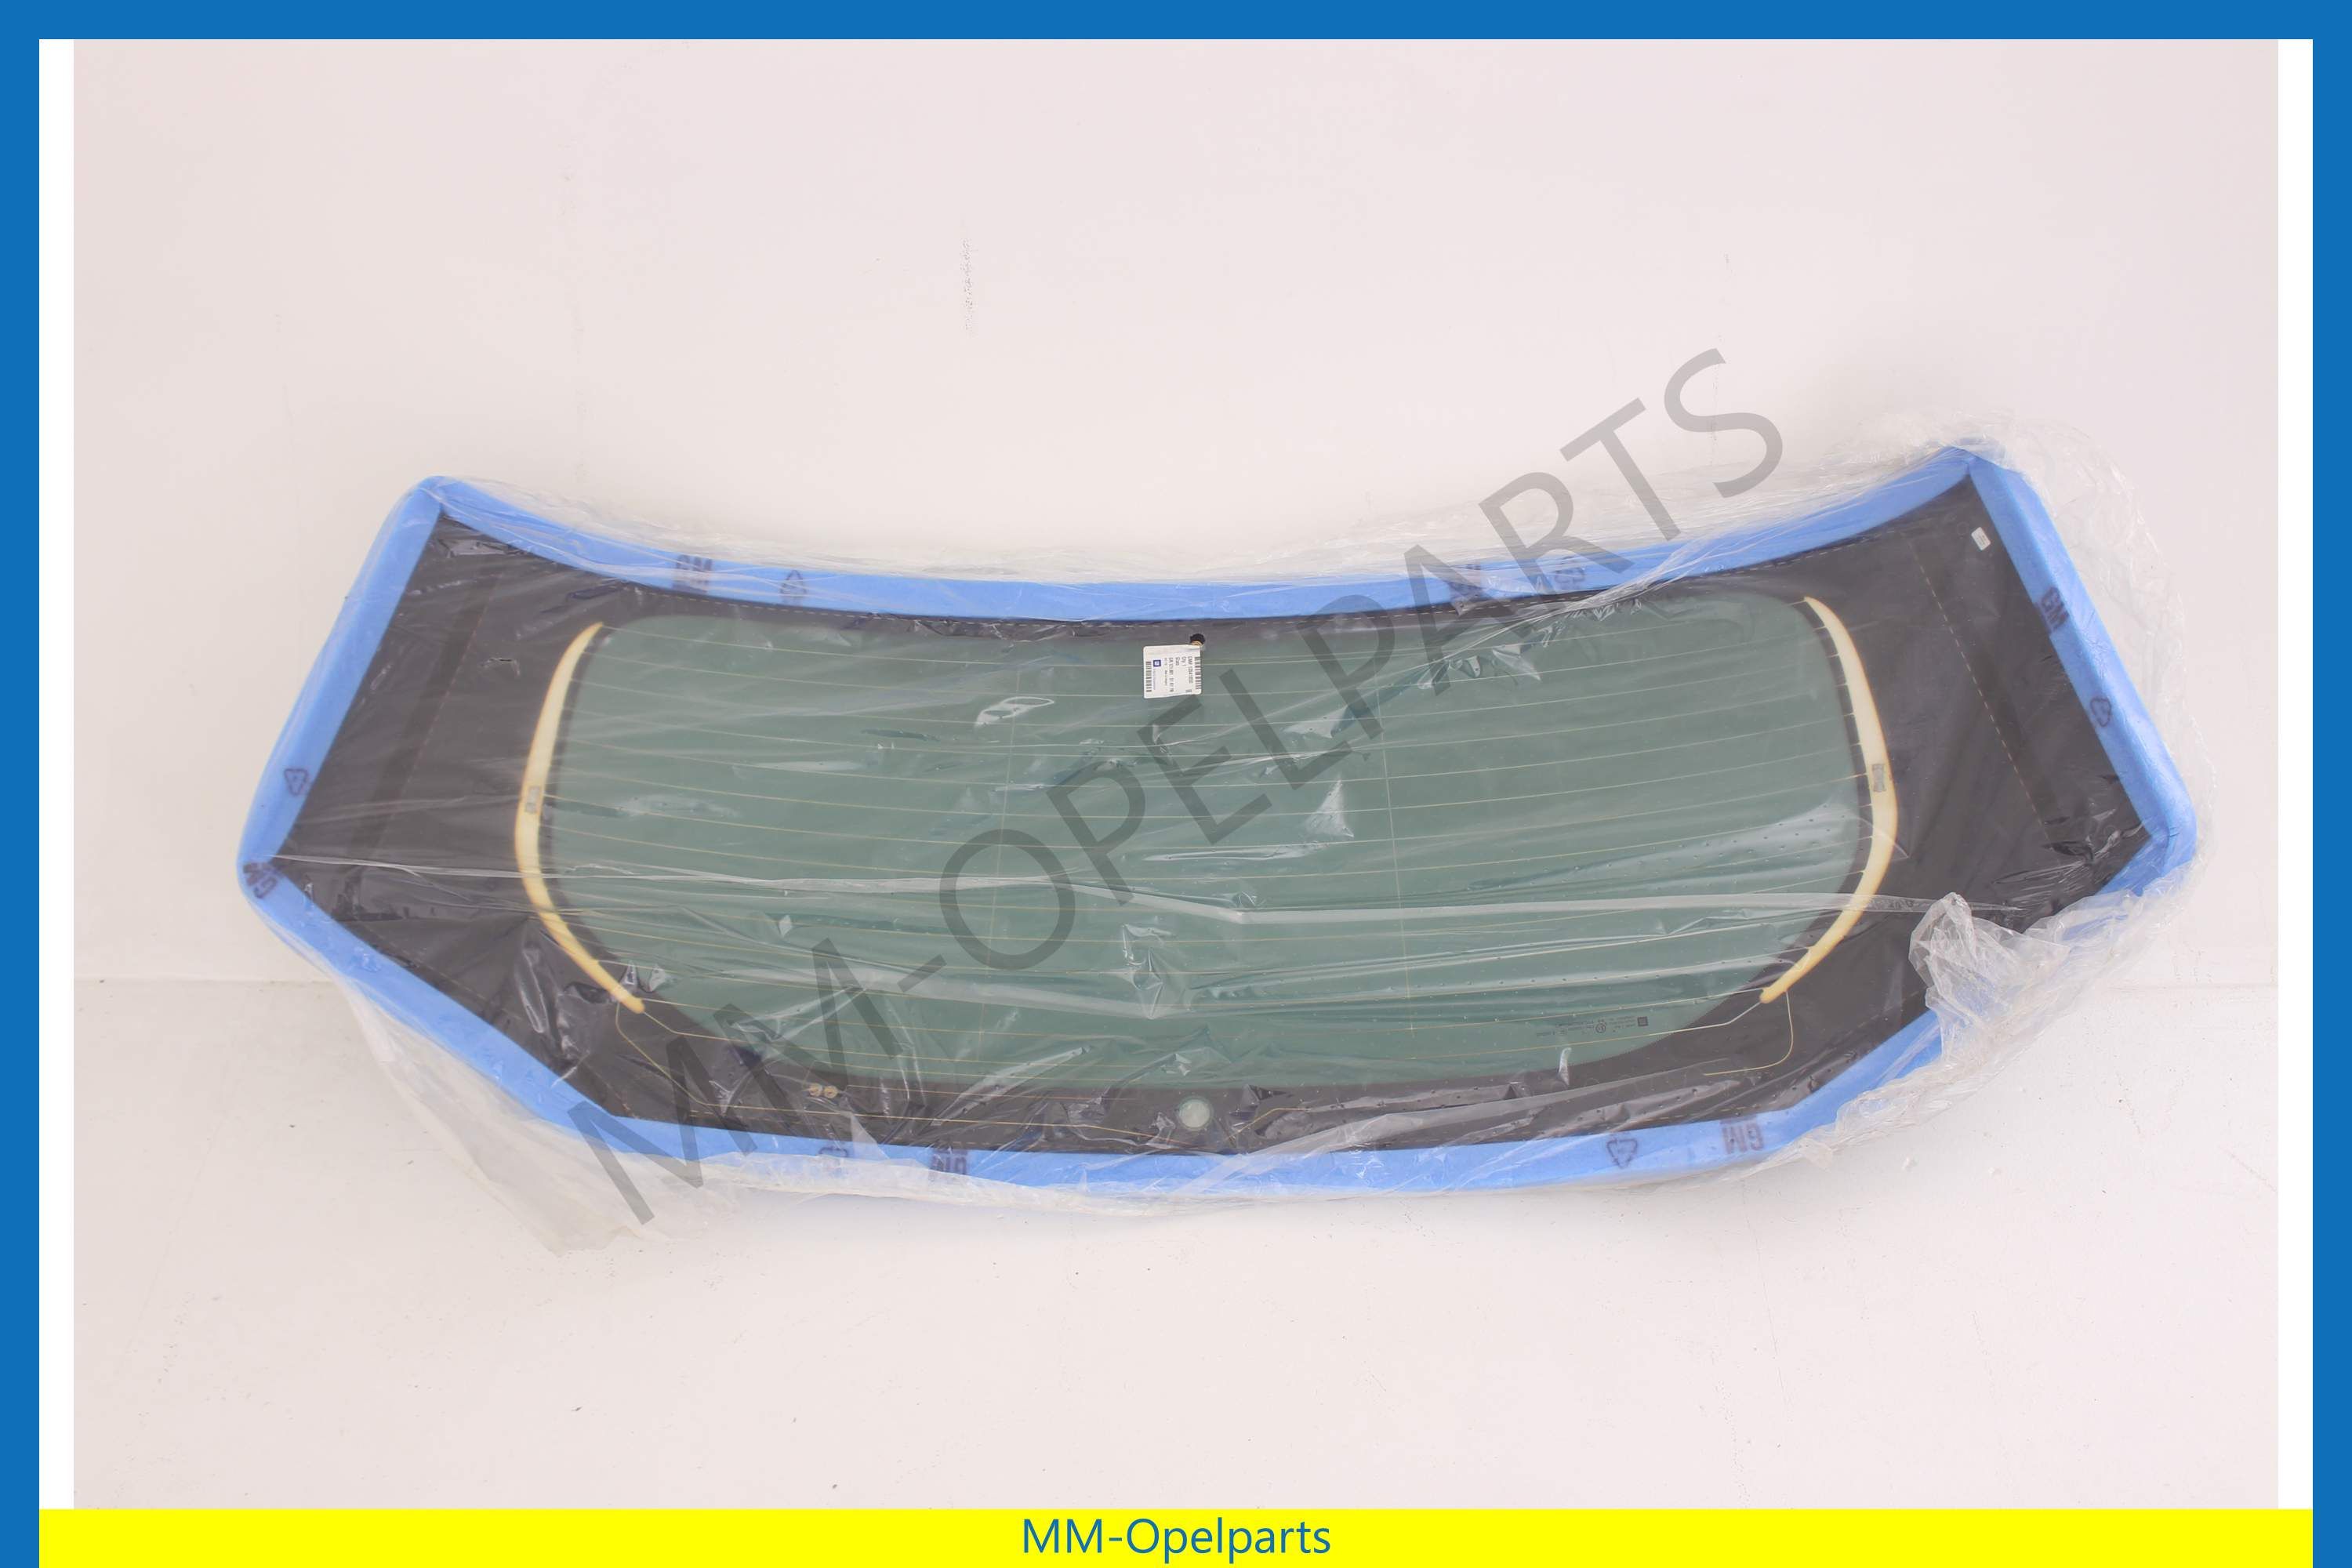 MM-Opelparts Heckscheibe mit Verdunklungsfolie [RPO AKO] für  Diebstahlsicherung MM-Opelparts